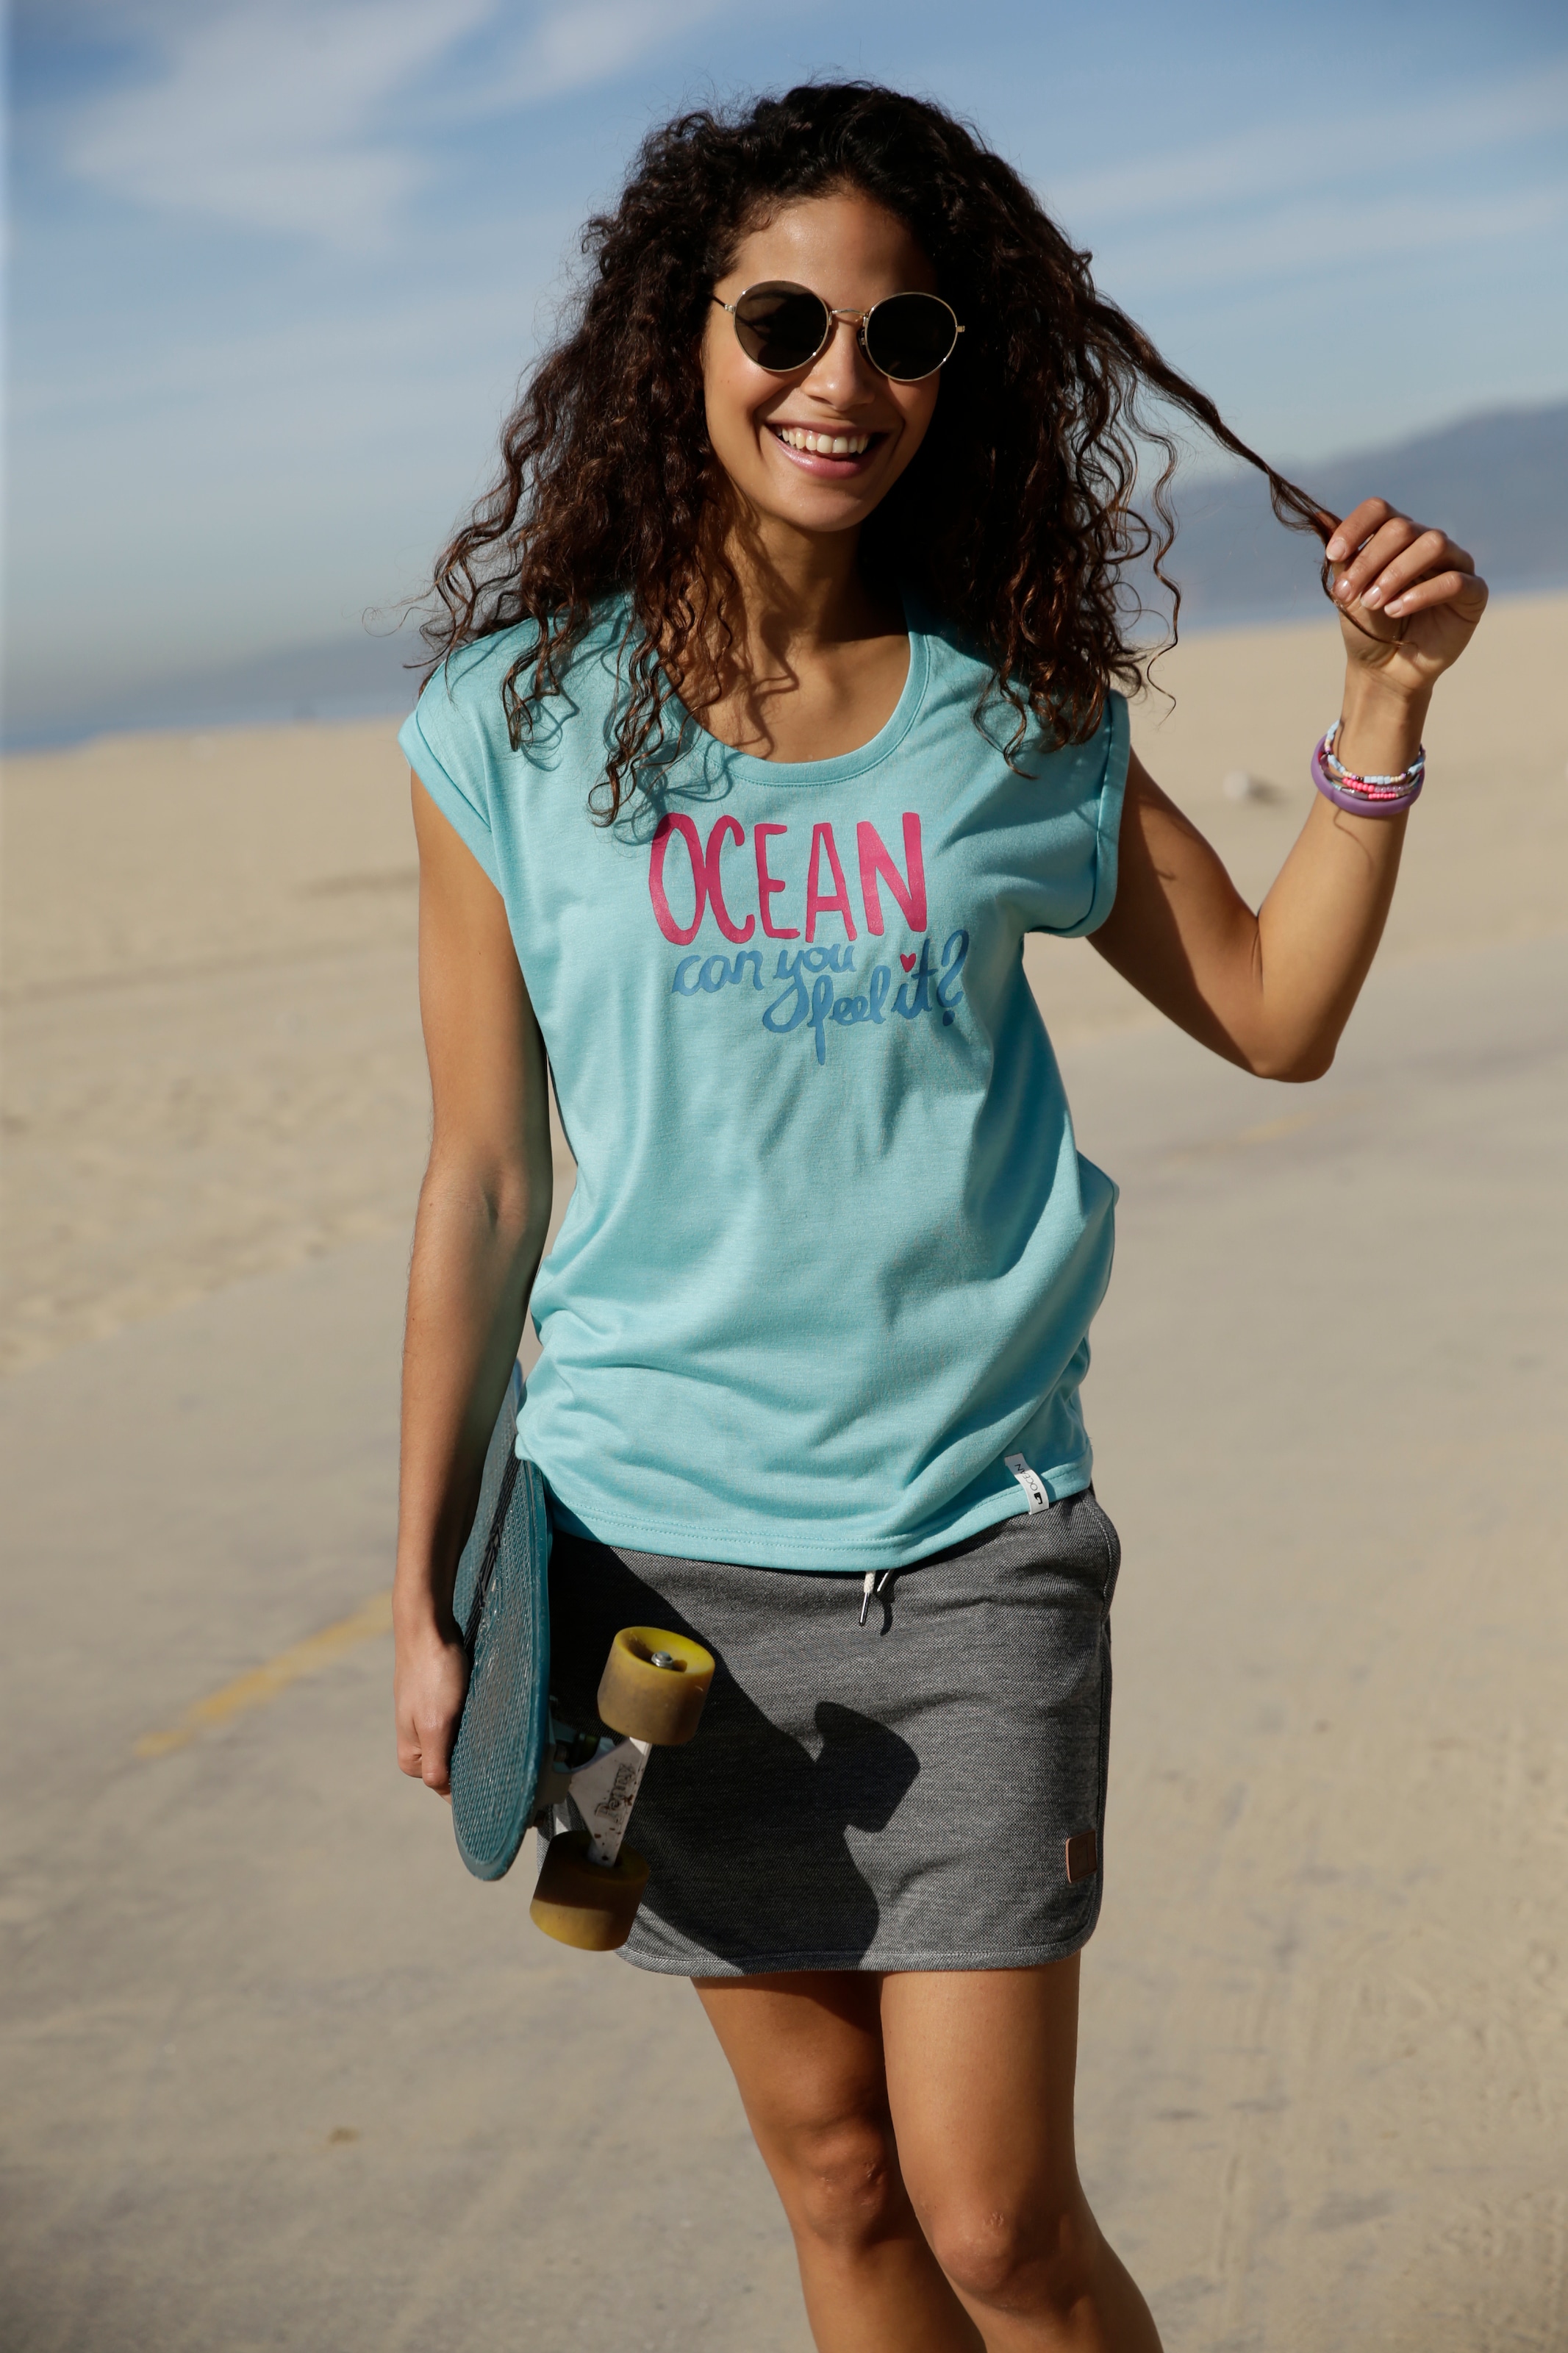 Ocean Sportswear T-Shirt, in Viskose-Qualität